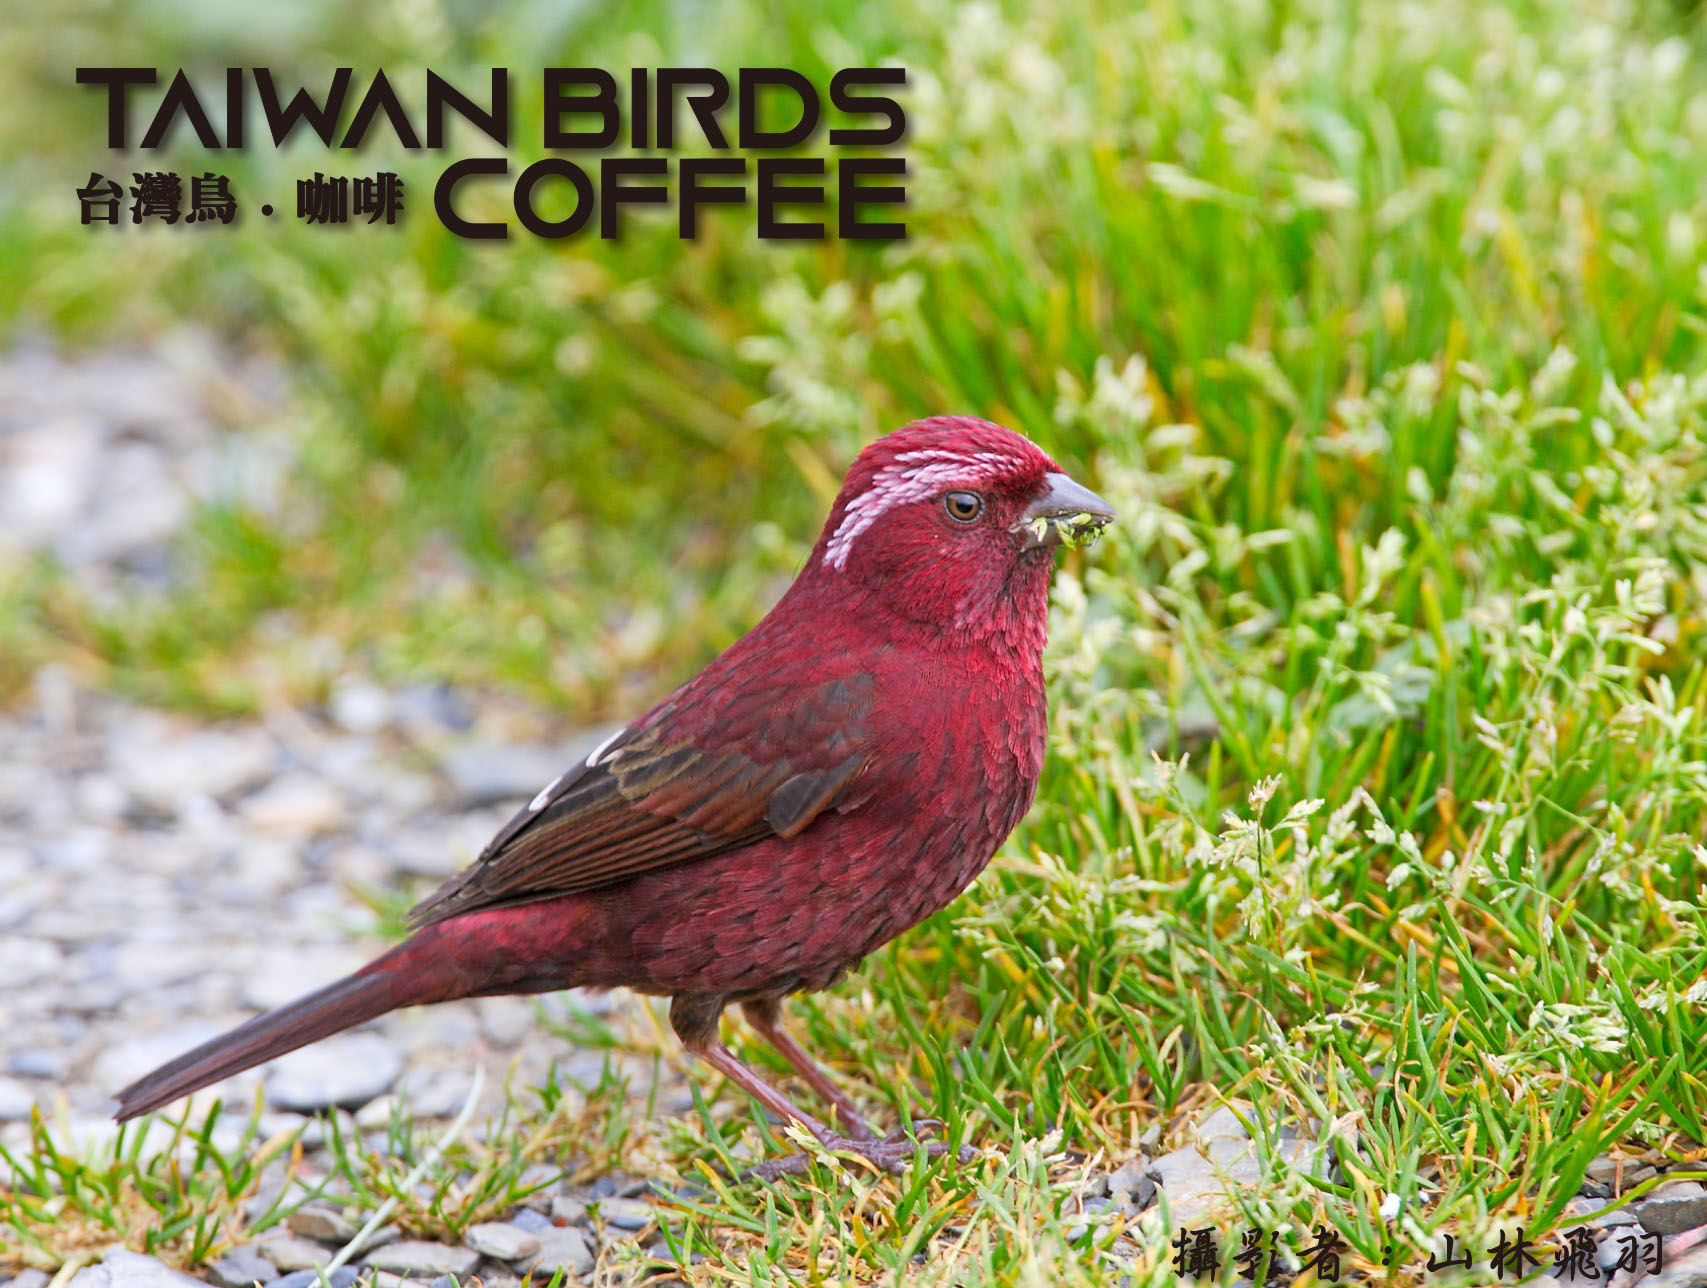 台灣特有種 台灣朱雀 台灣鳥咖啡